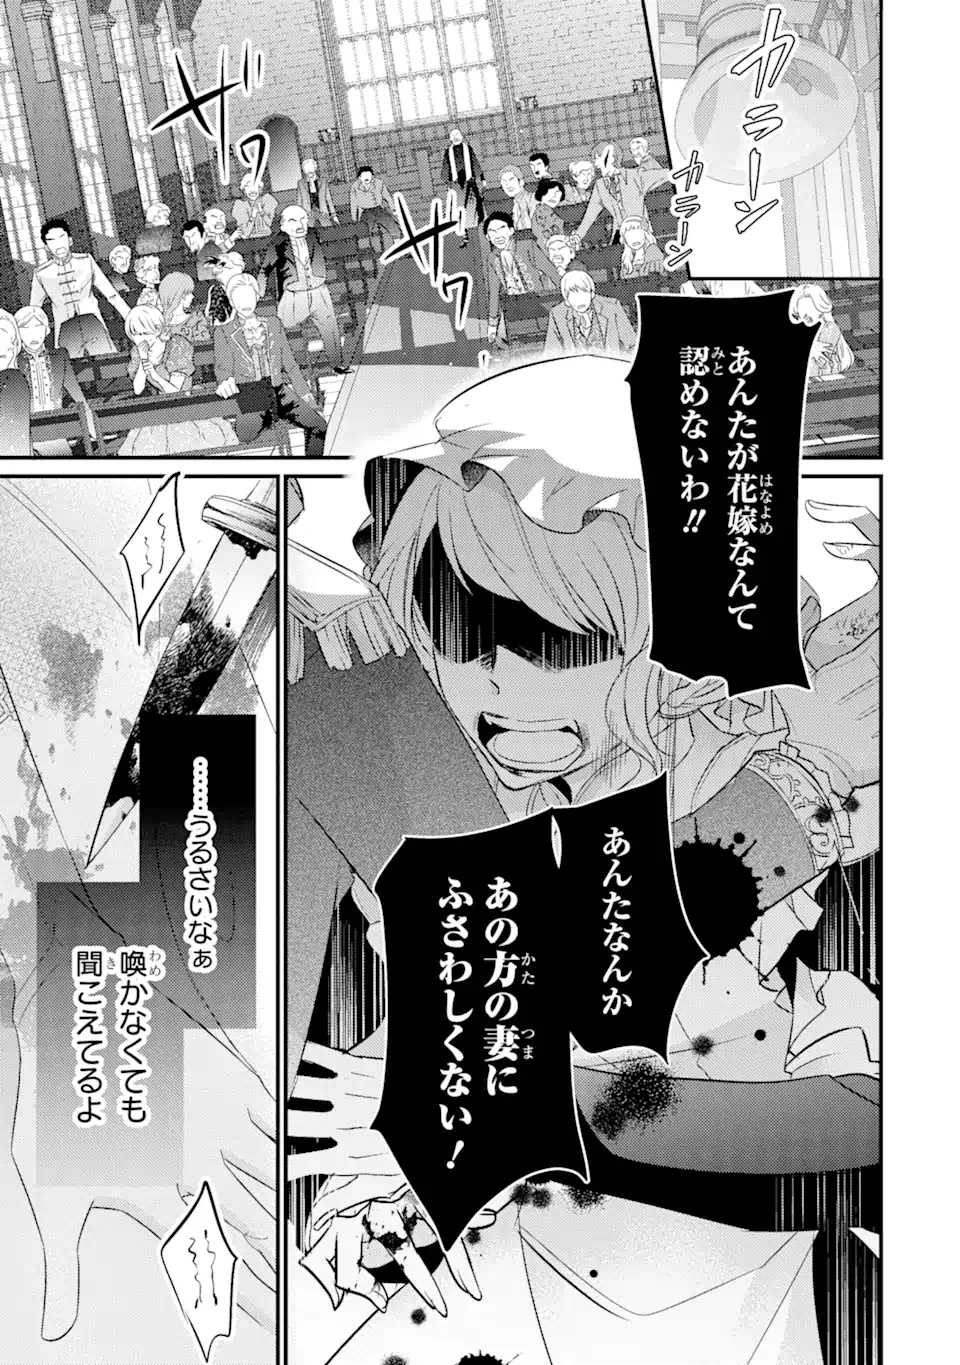 Kekkon suru Shinde Shimau no de, Kanst Seijo (Lv. 99) wa Meshi Tero Shimasu! - Chapter 1 - Page 2